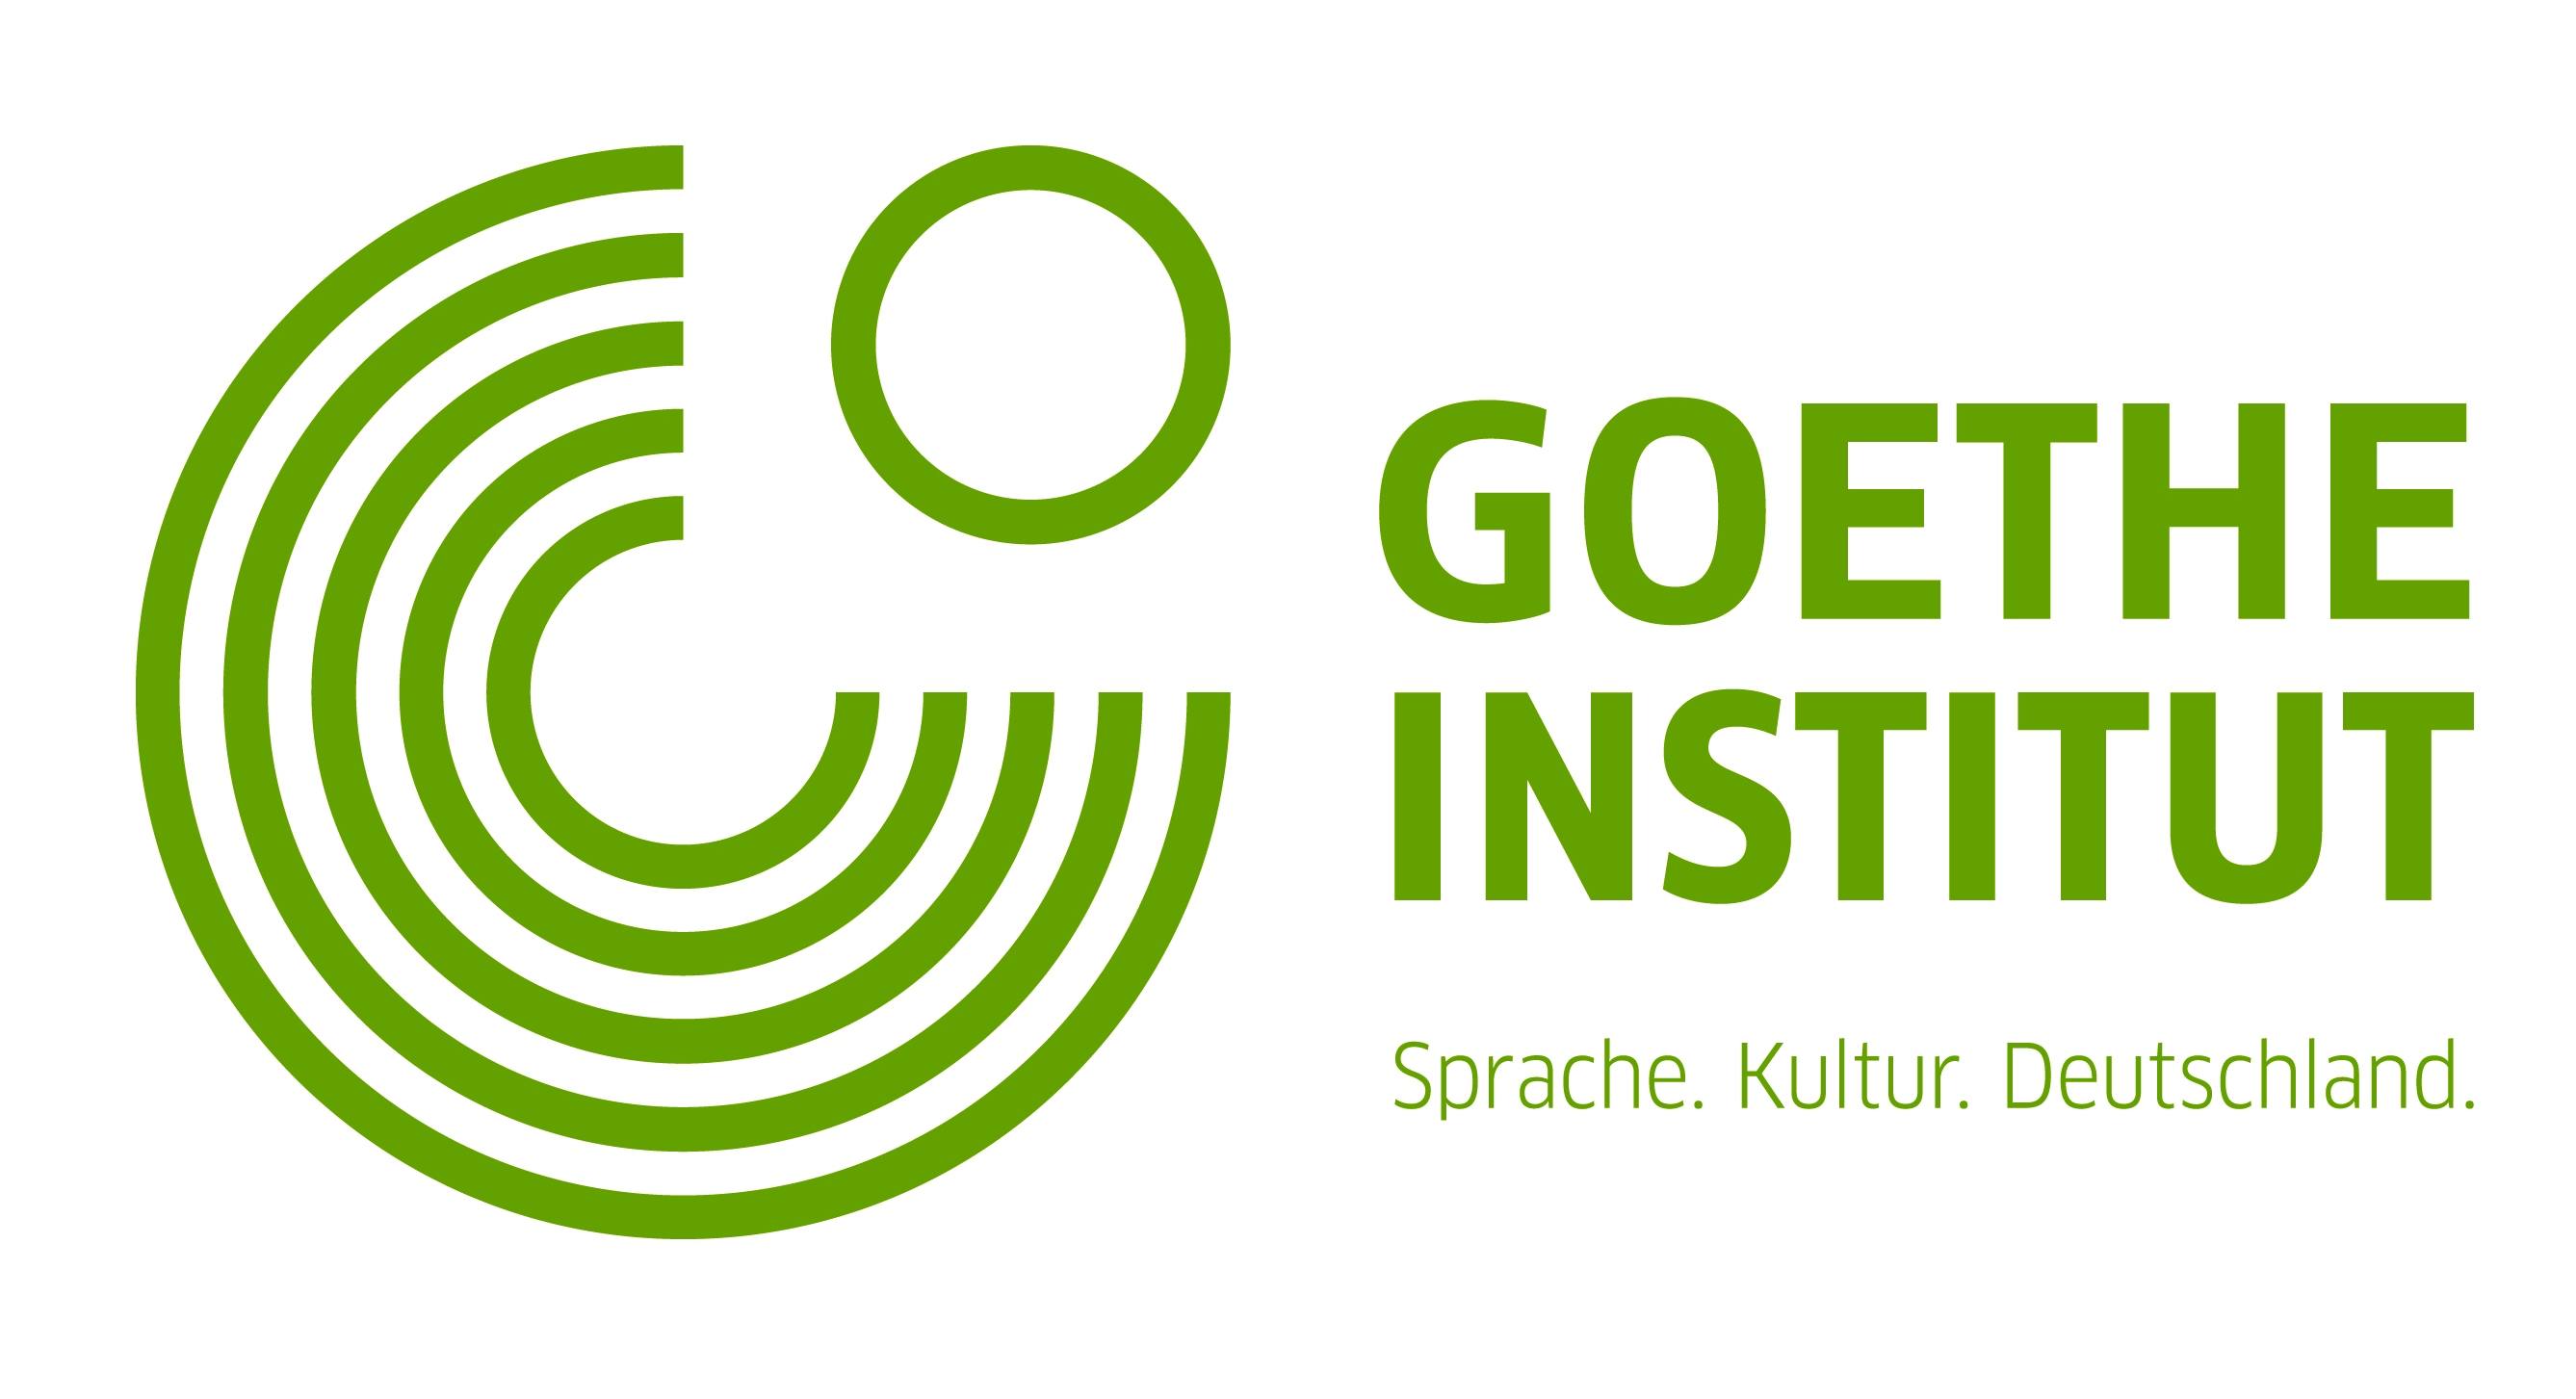 Goethe Insitut 50 Logo 004